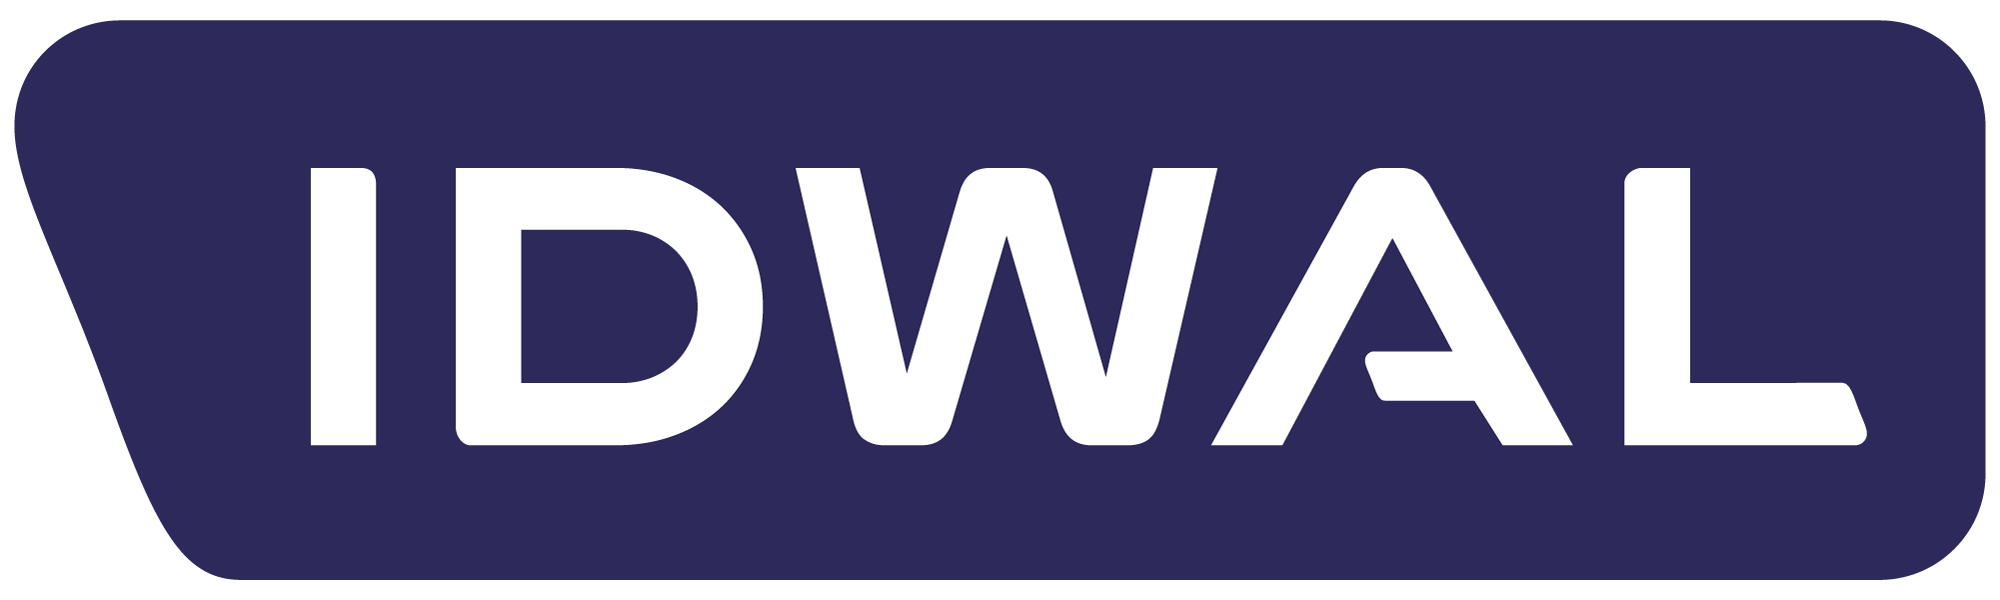 IDWAL-Logo-CMYK-Blue+White